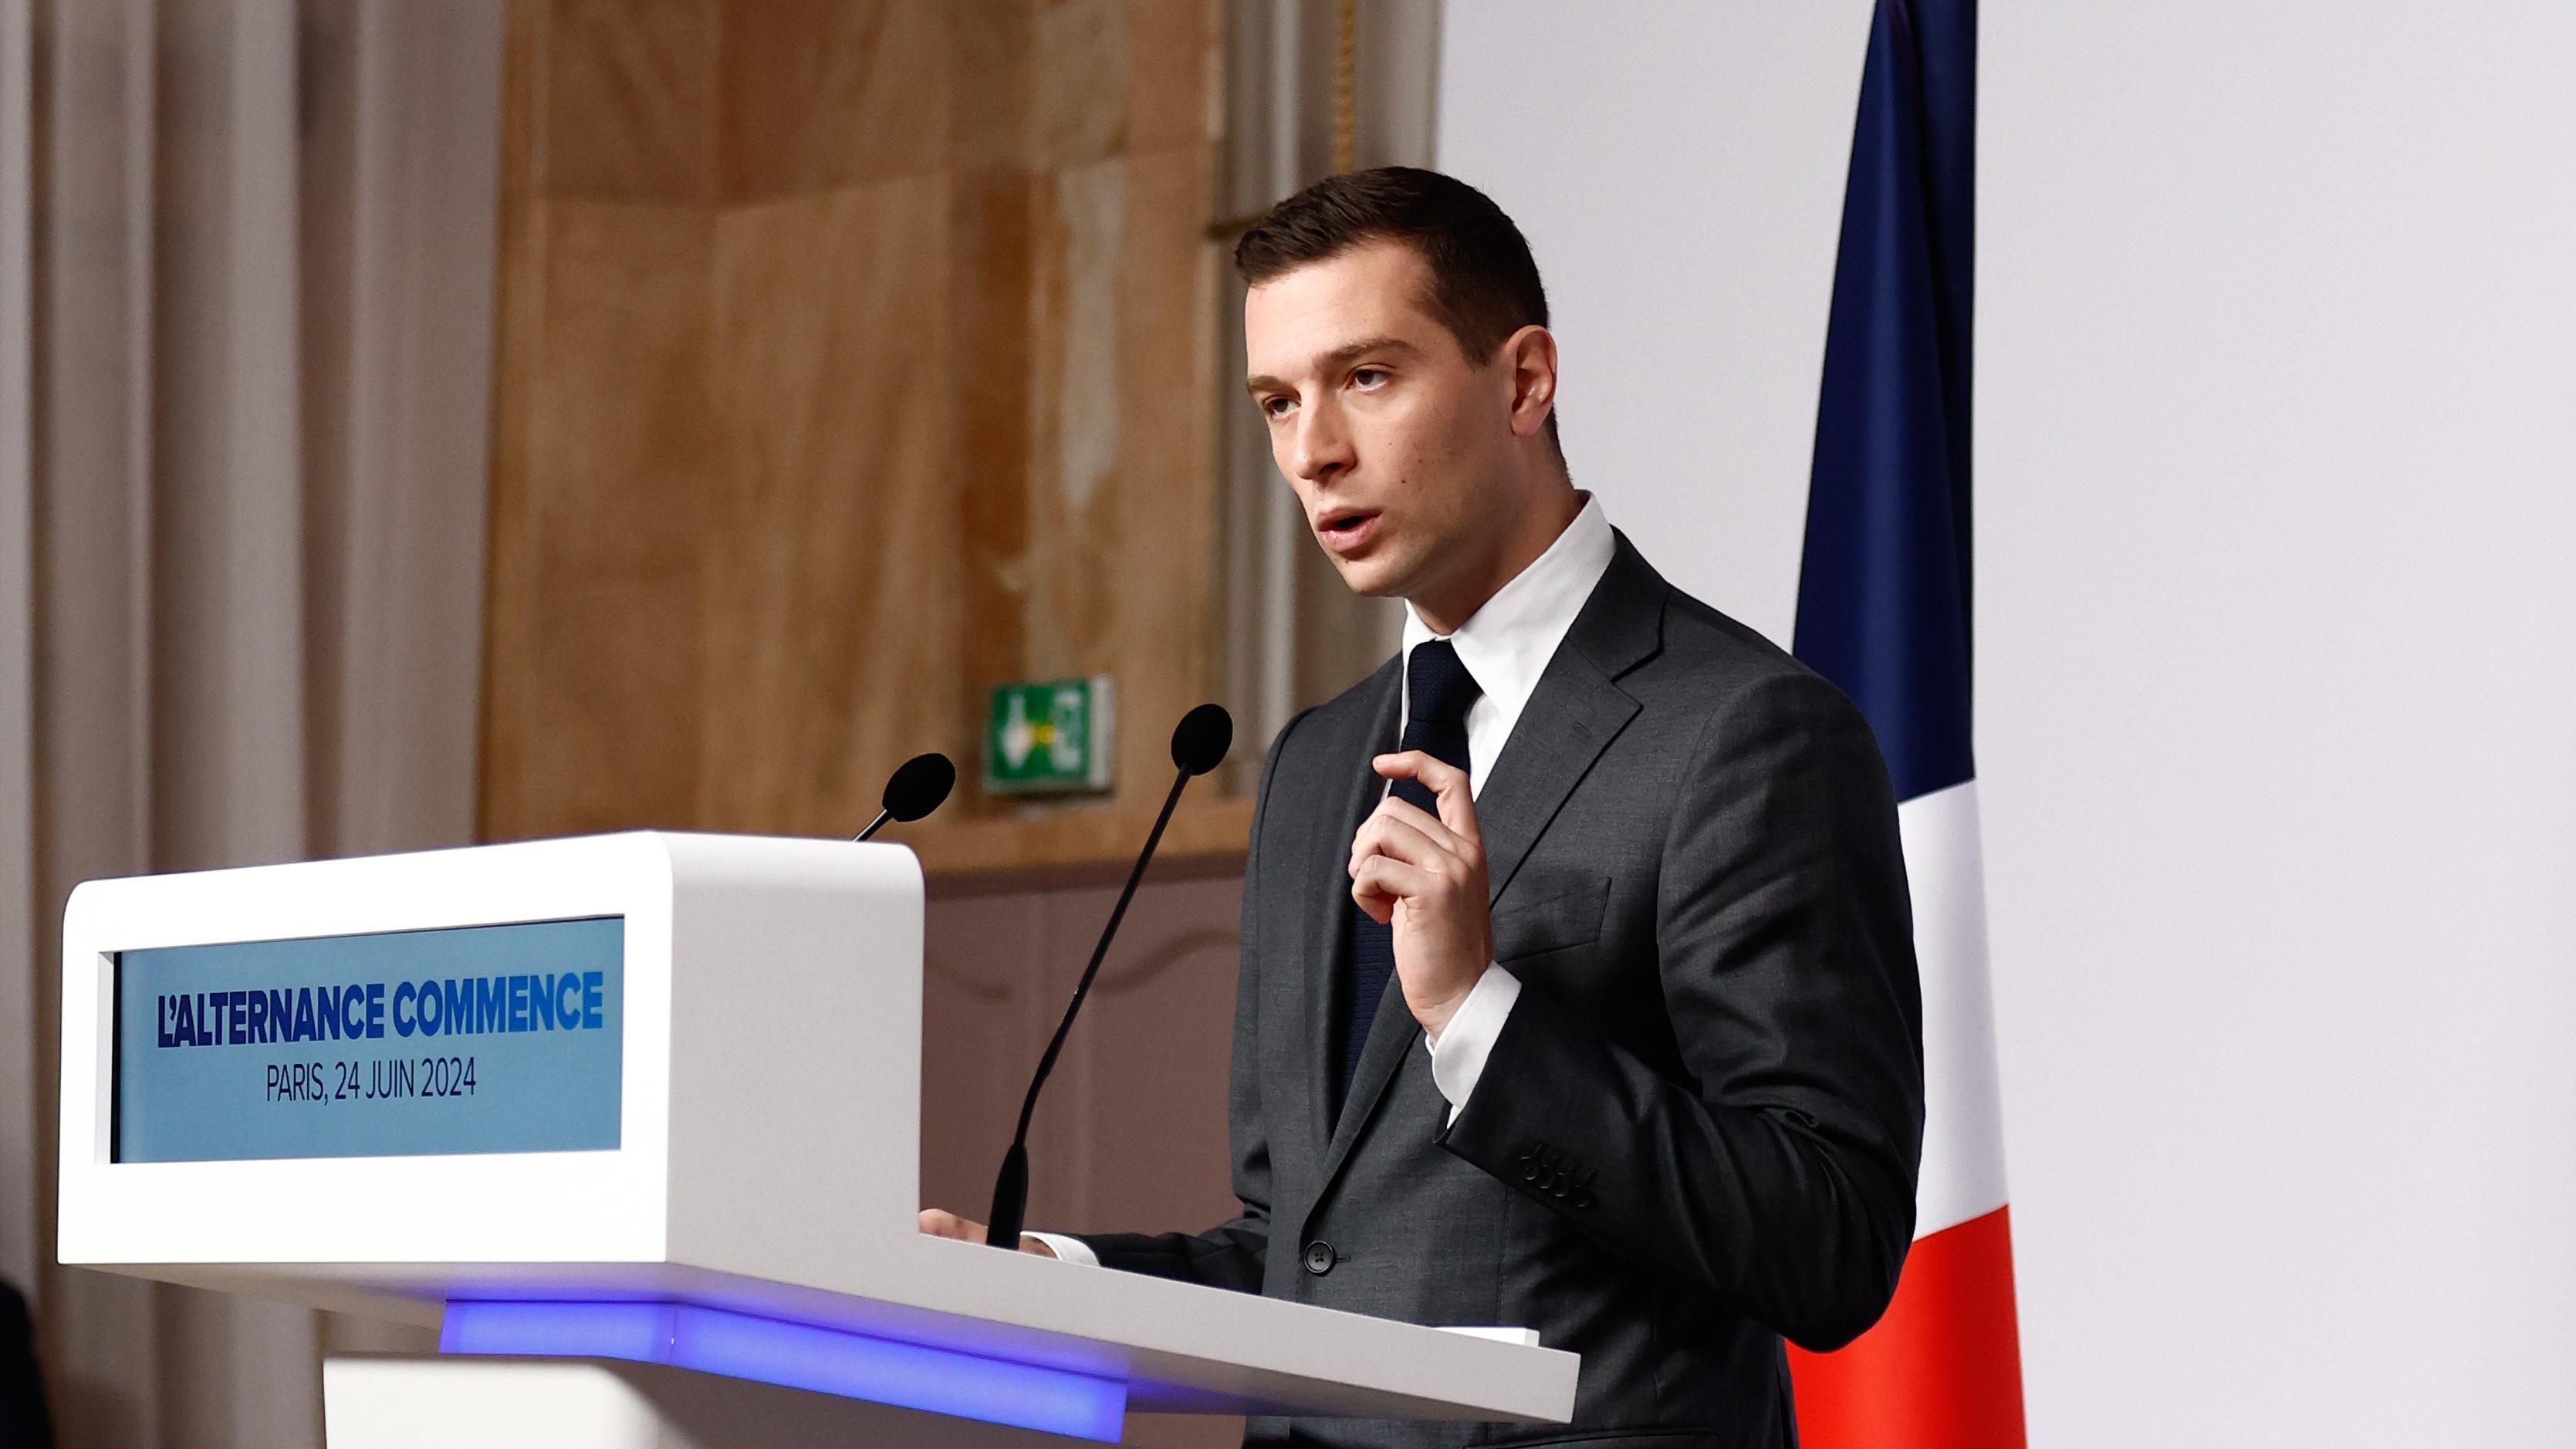 جوردان: رئيس وزراء فرنسا المحتمل، يبلغ 28 عاما ويظل لغزا للكثيرين